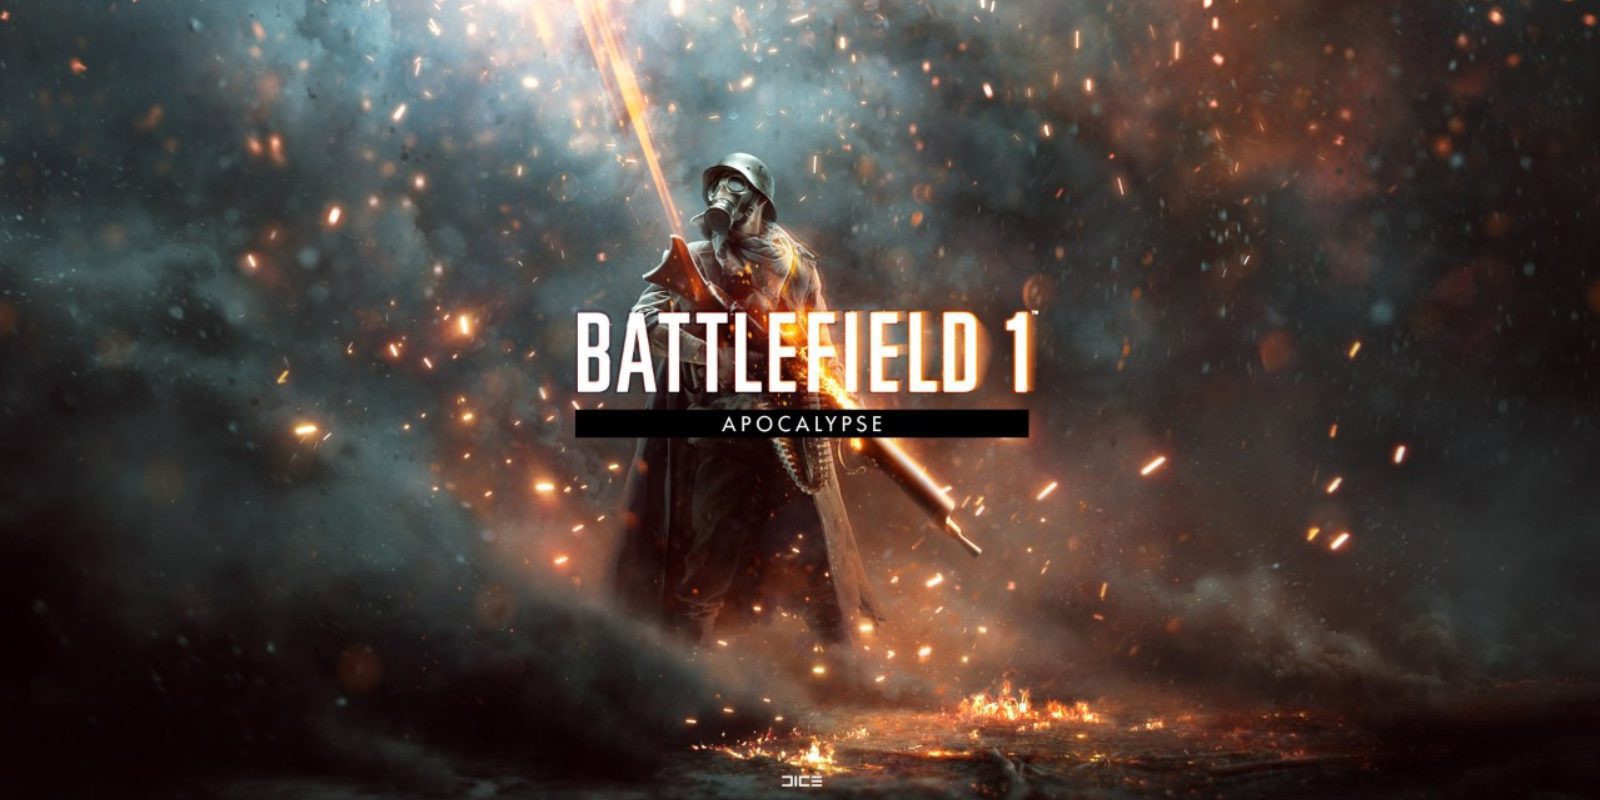 'Battlefield 1' nos adelanta los contenidos de su próxima gran expansión, 'Apocalypse'